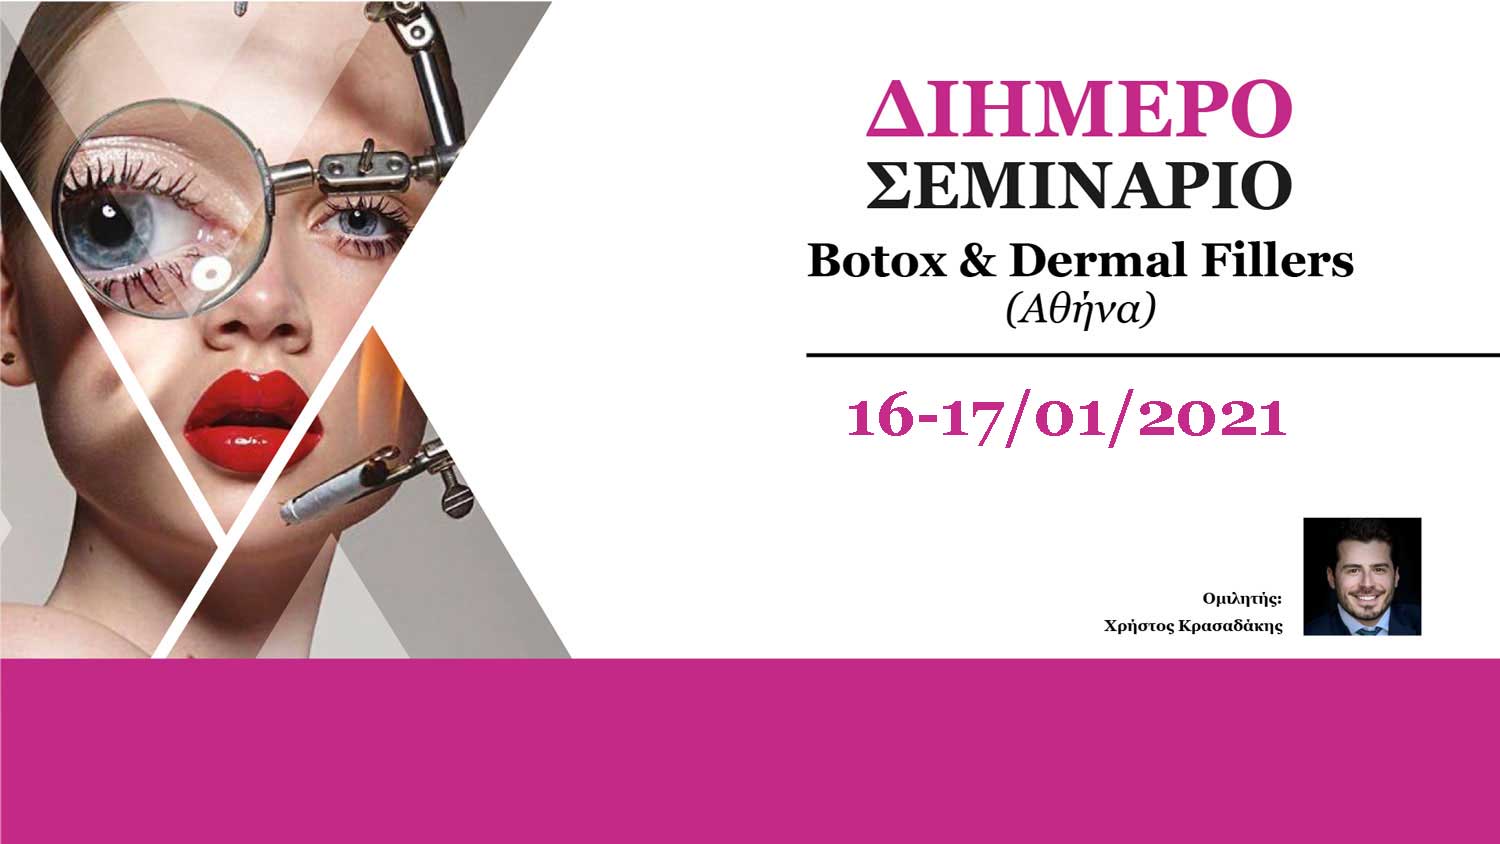 2ήμερο Σεμινάριο Botox & Dermal Fillers (Αθήνα)